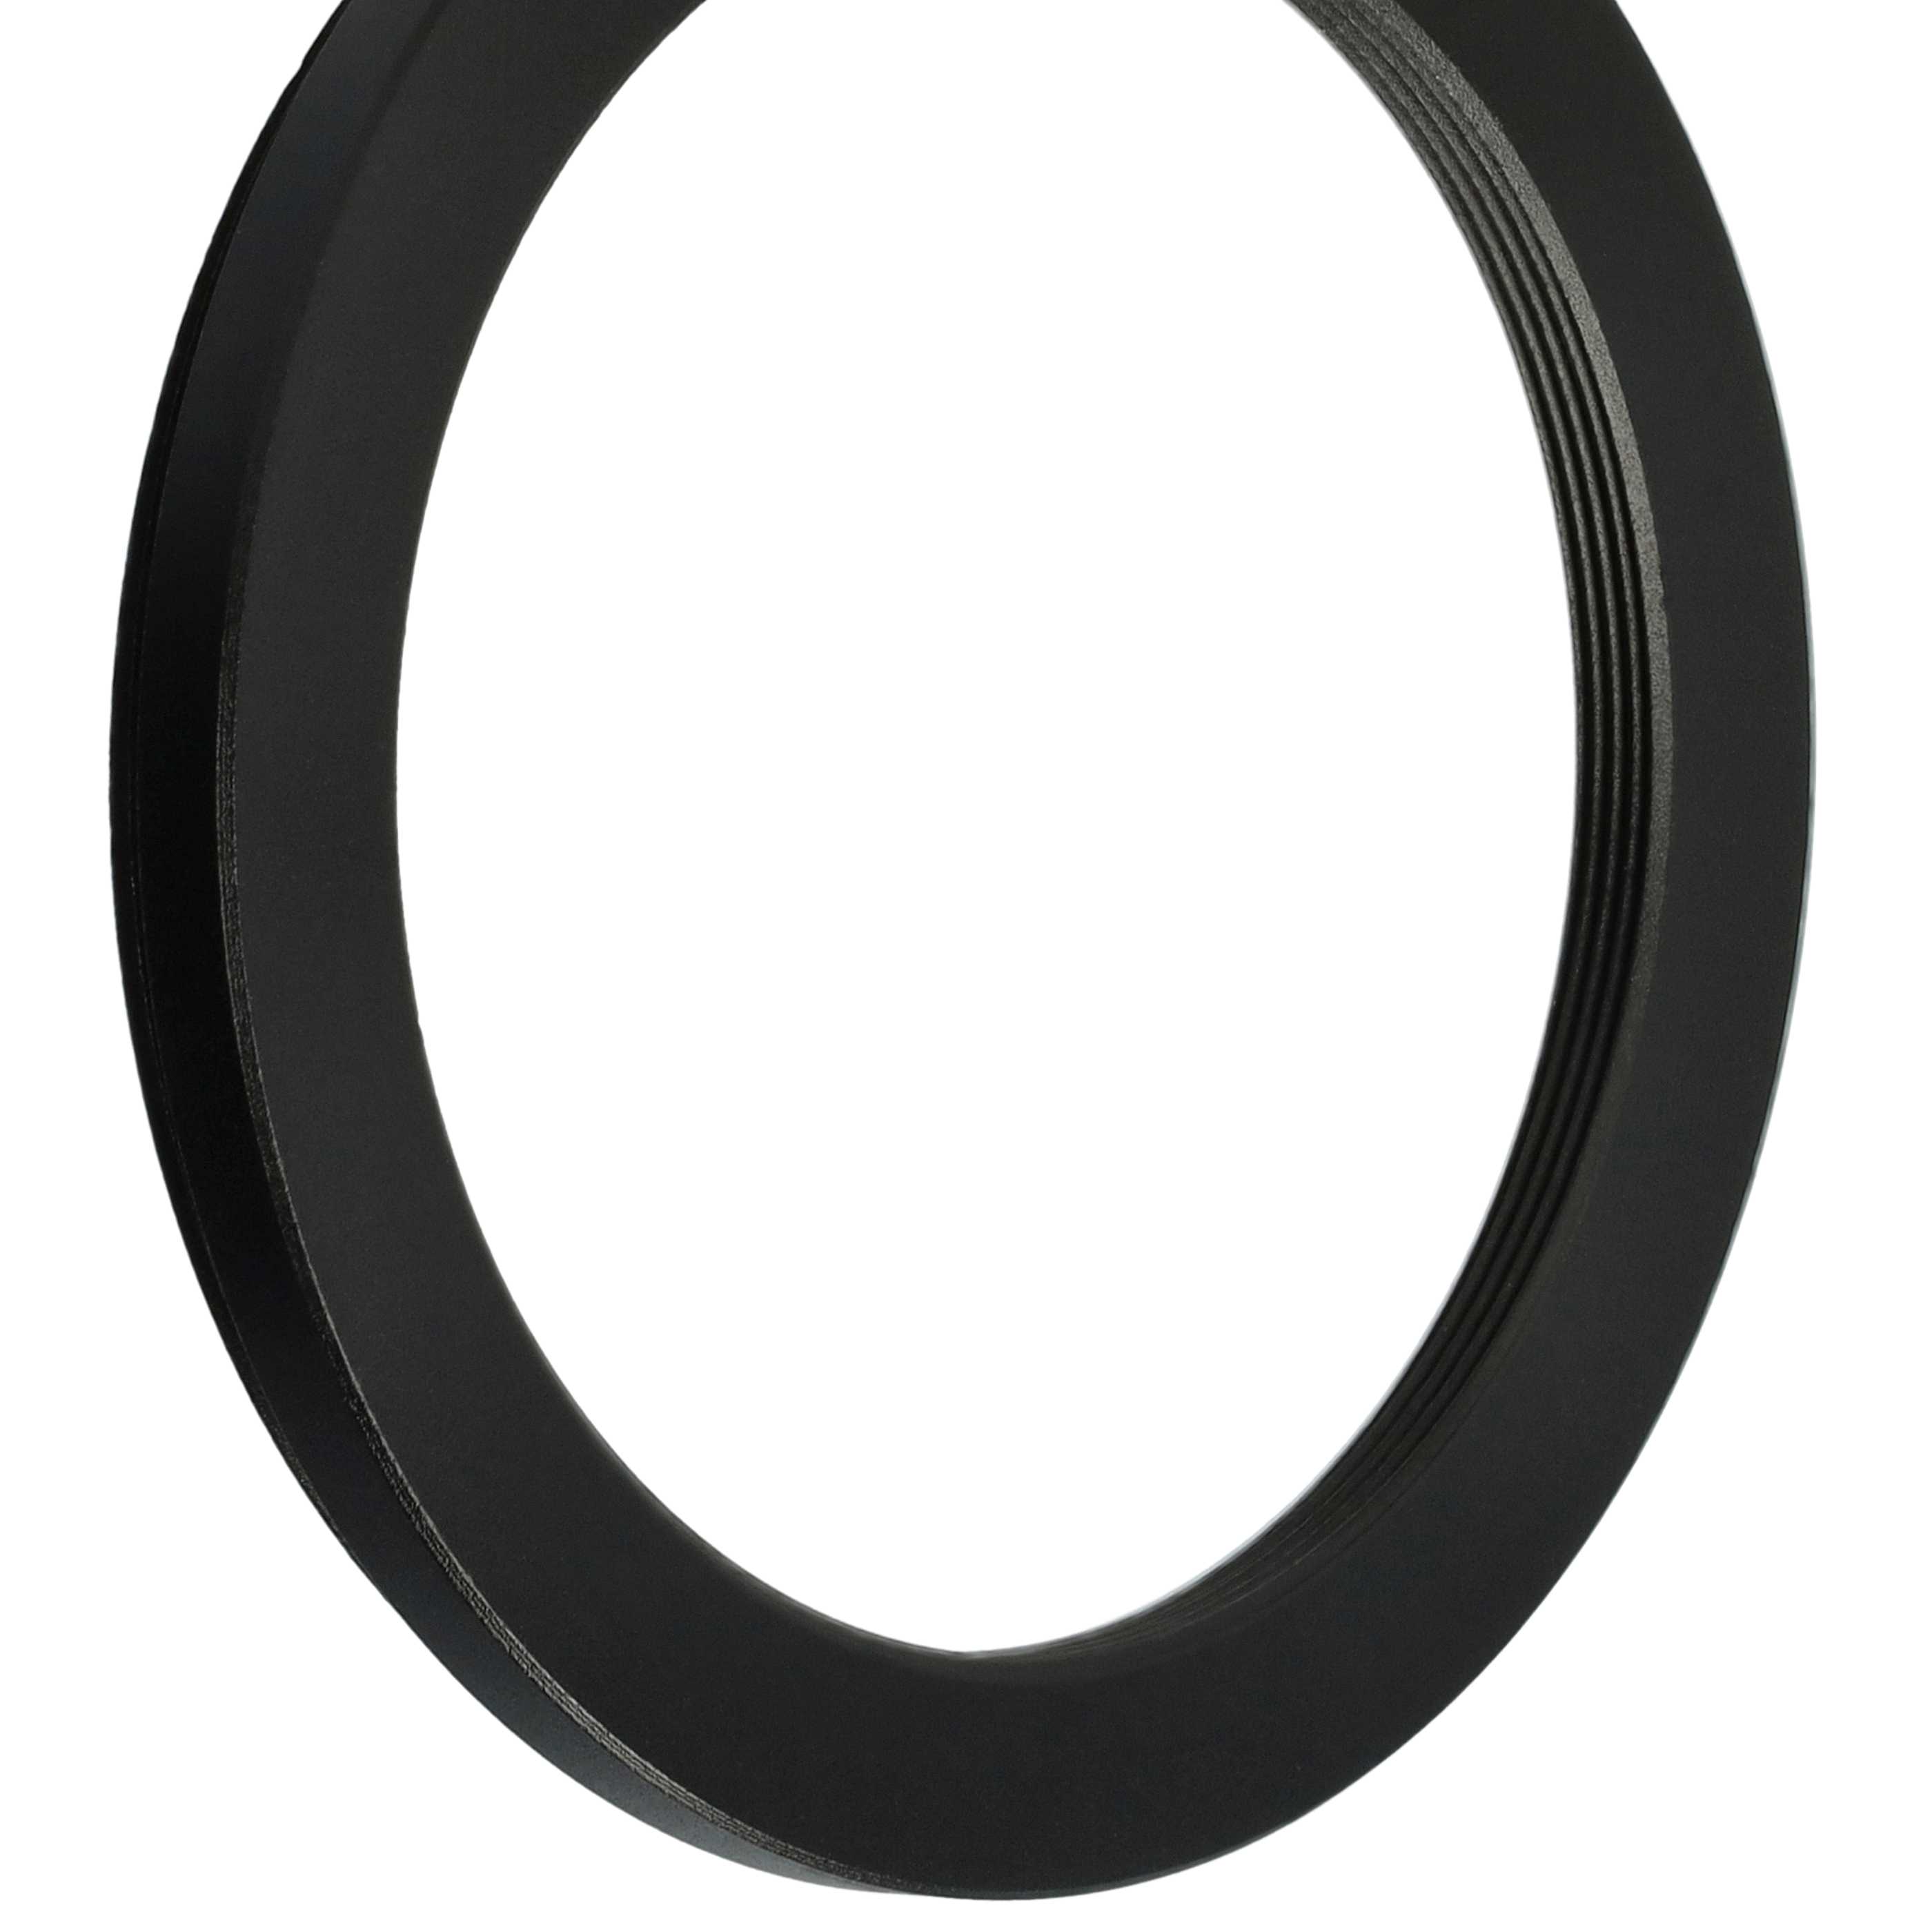 Redukcja filtrowa adapter Step-Down 58 mm - 48 mm pasująca do obiektywu - metal, czarny